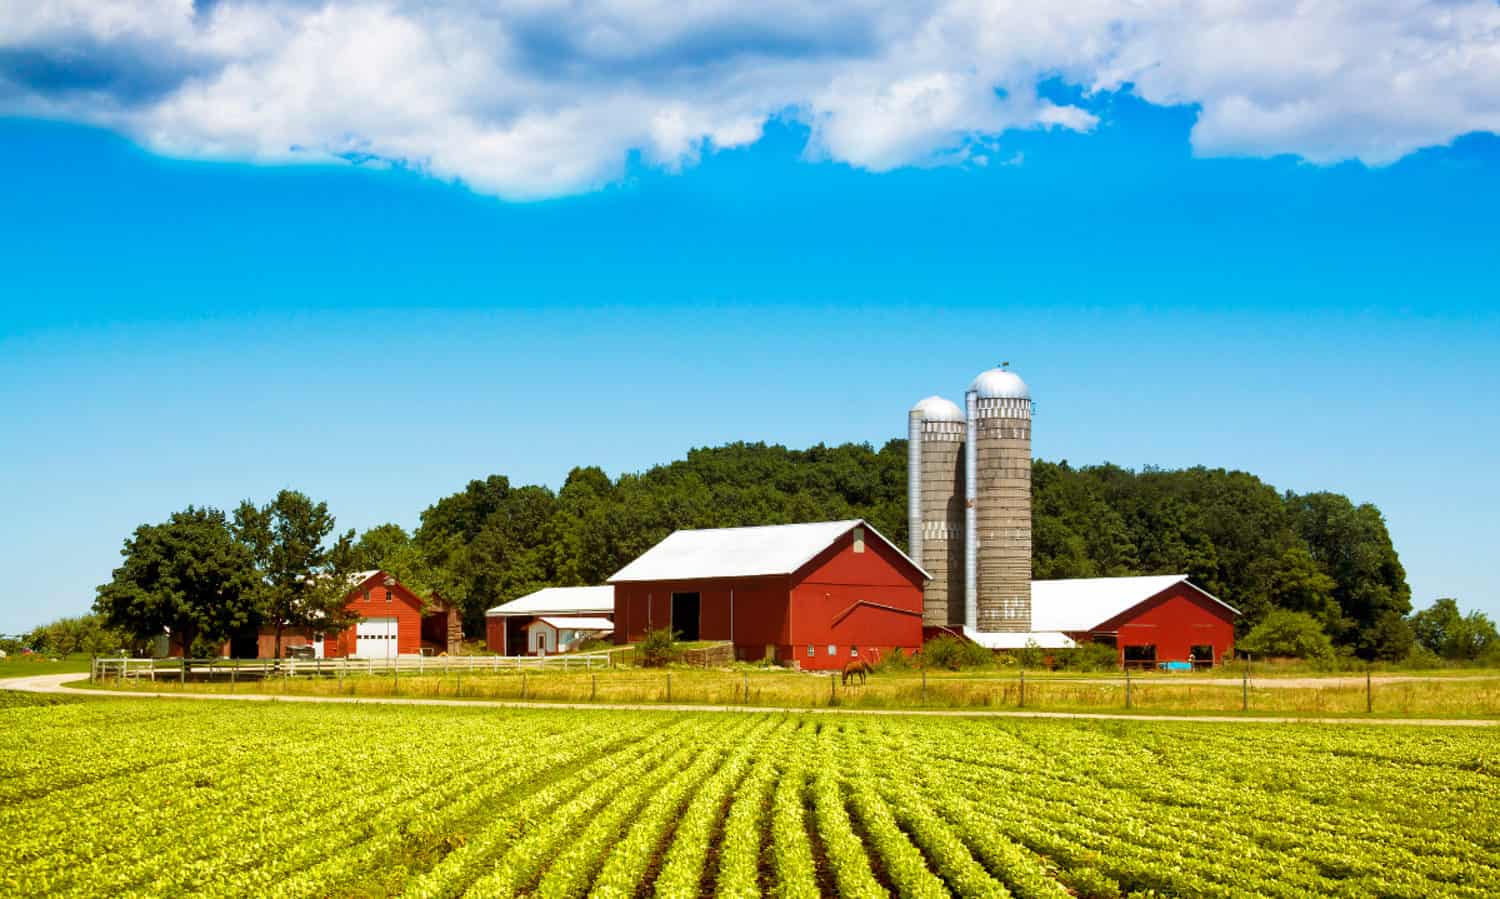 农业法案是一个巨大的、综合的一项立法,规定每年870亿美元向国家食品和农业政策。国会必须确保今年的农业法案建立一个可持续的、健康的未来。